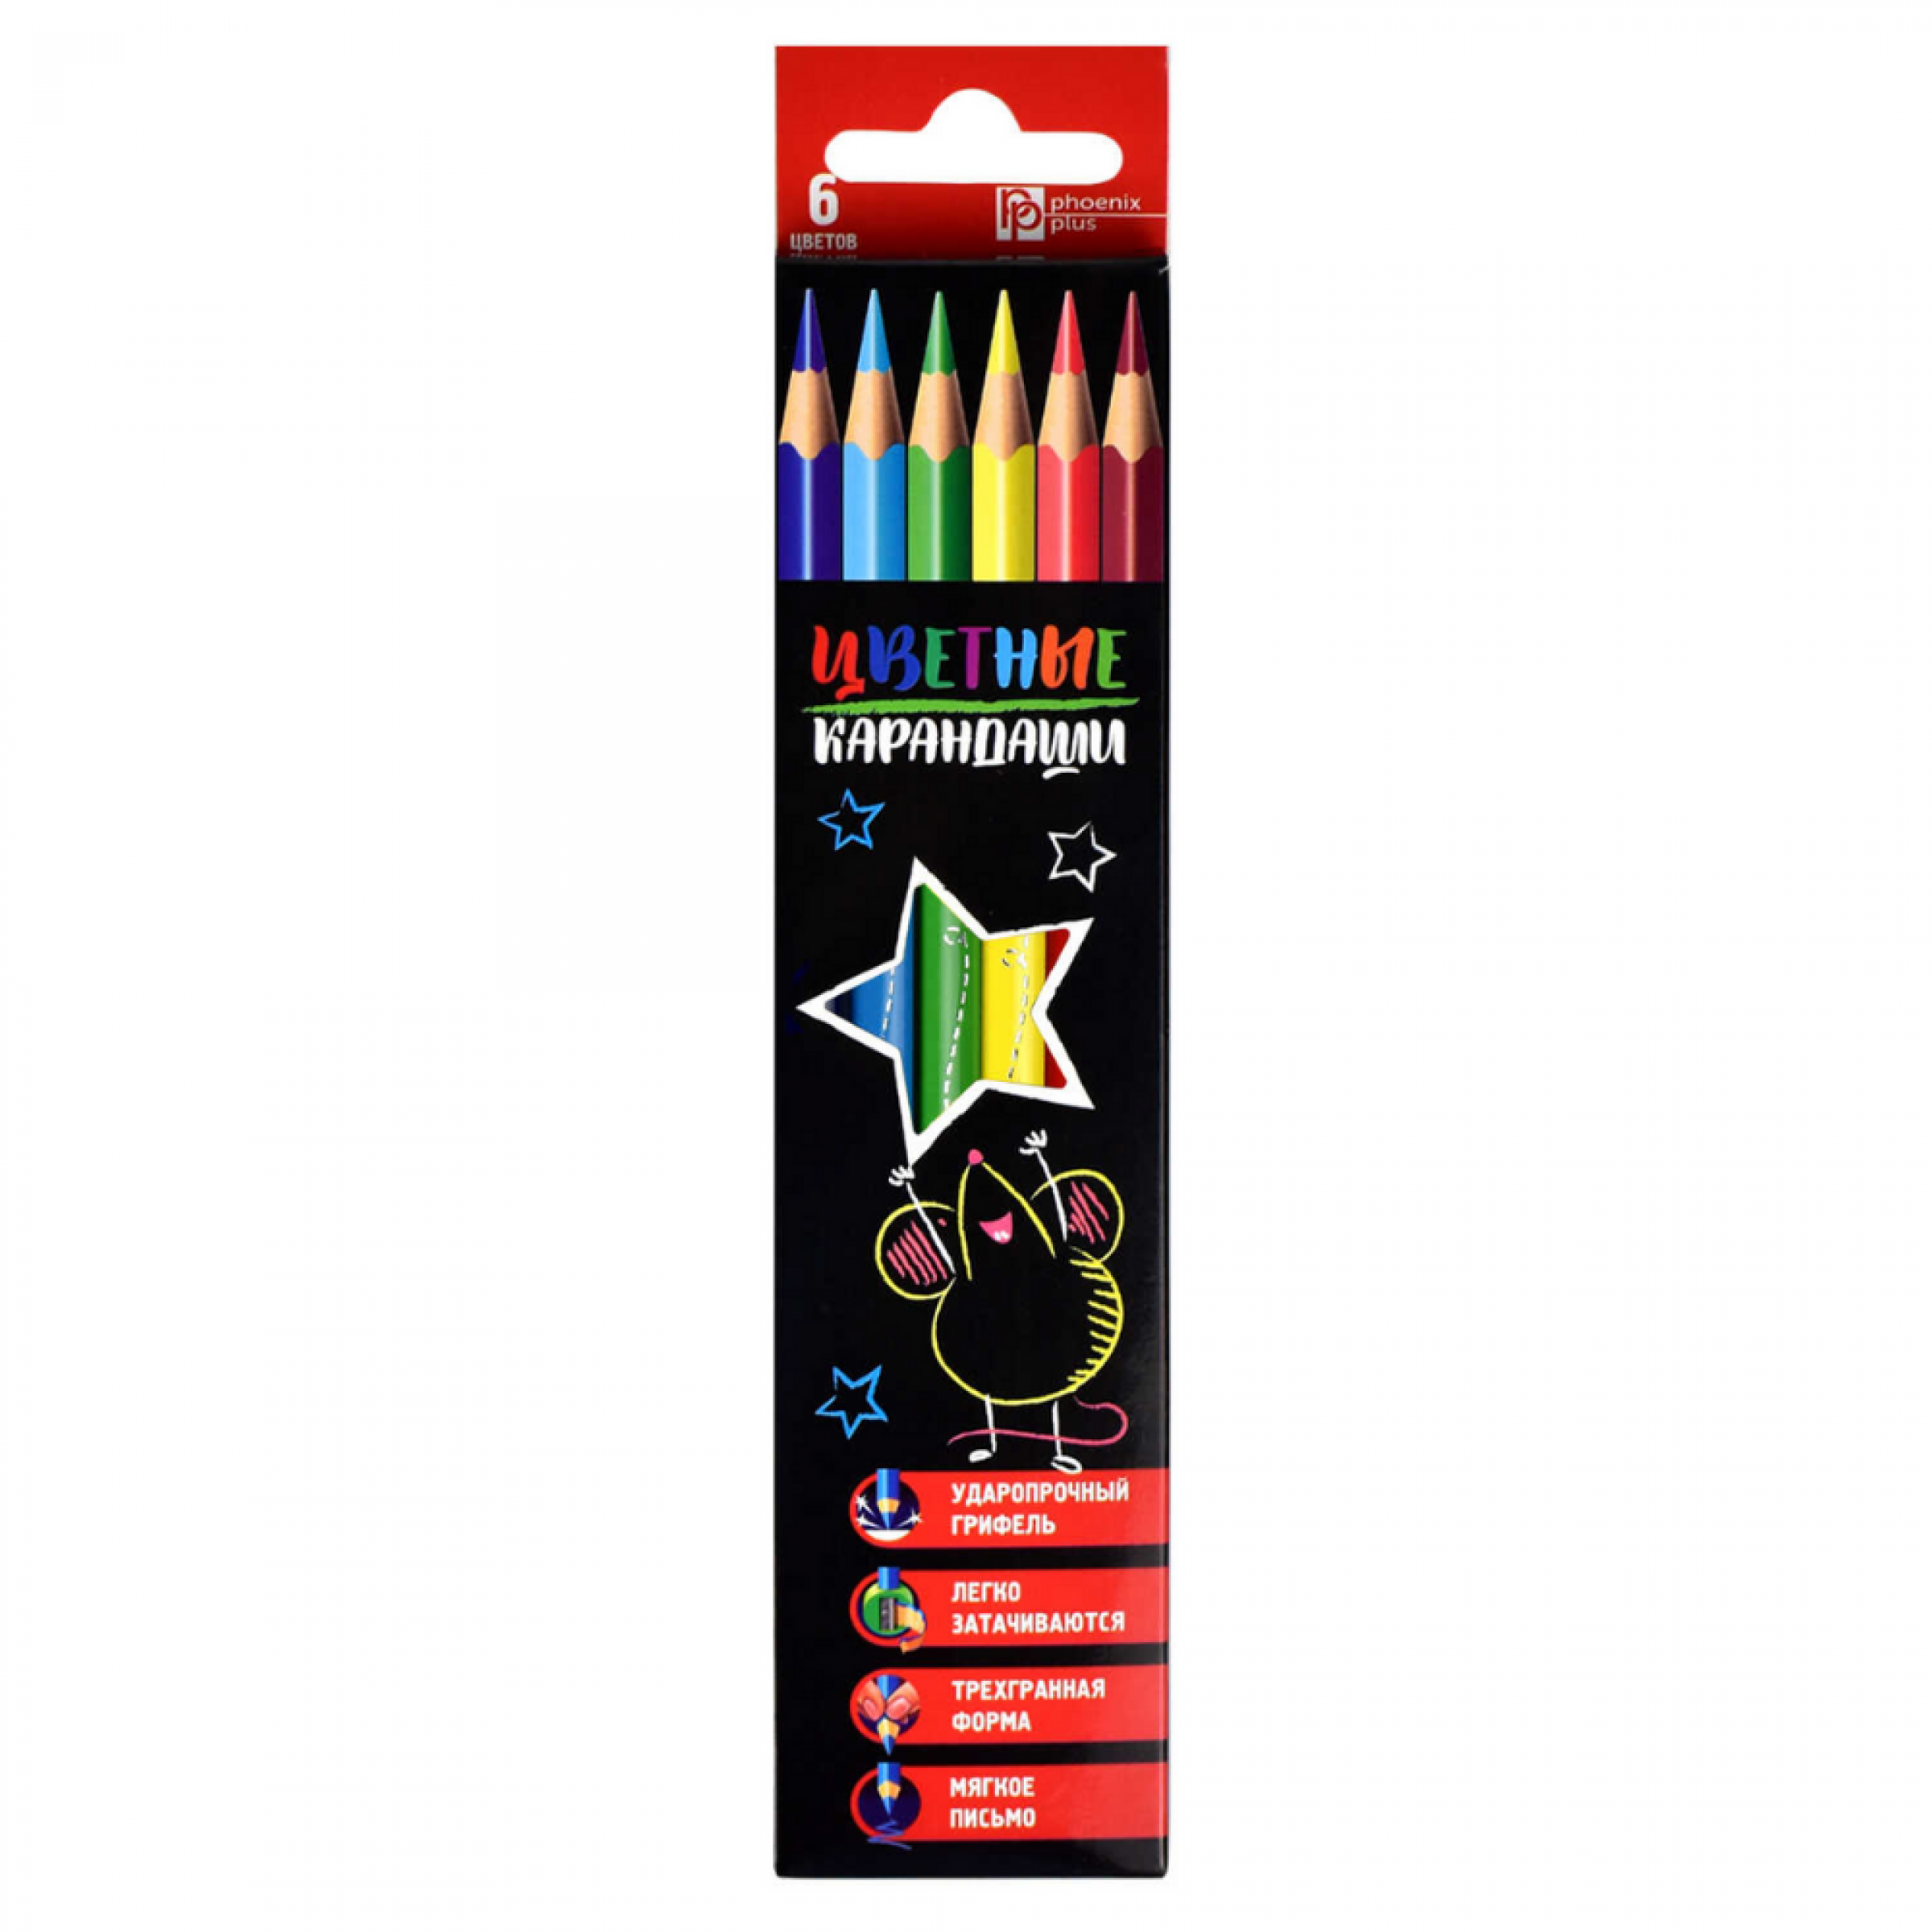 Набор цветных карандашей Феникс+ деревянные, Мышка со звездой, 6 цвет. Карандашей